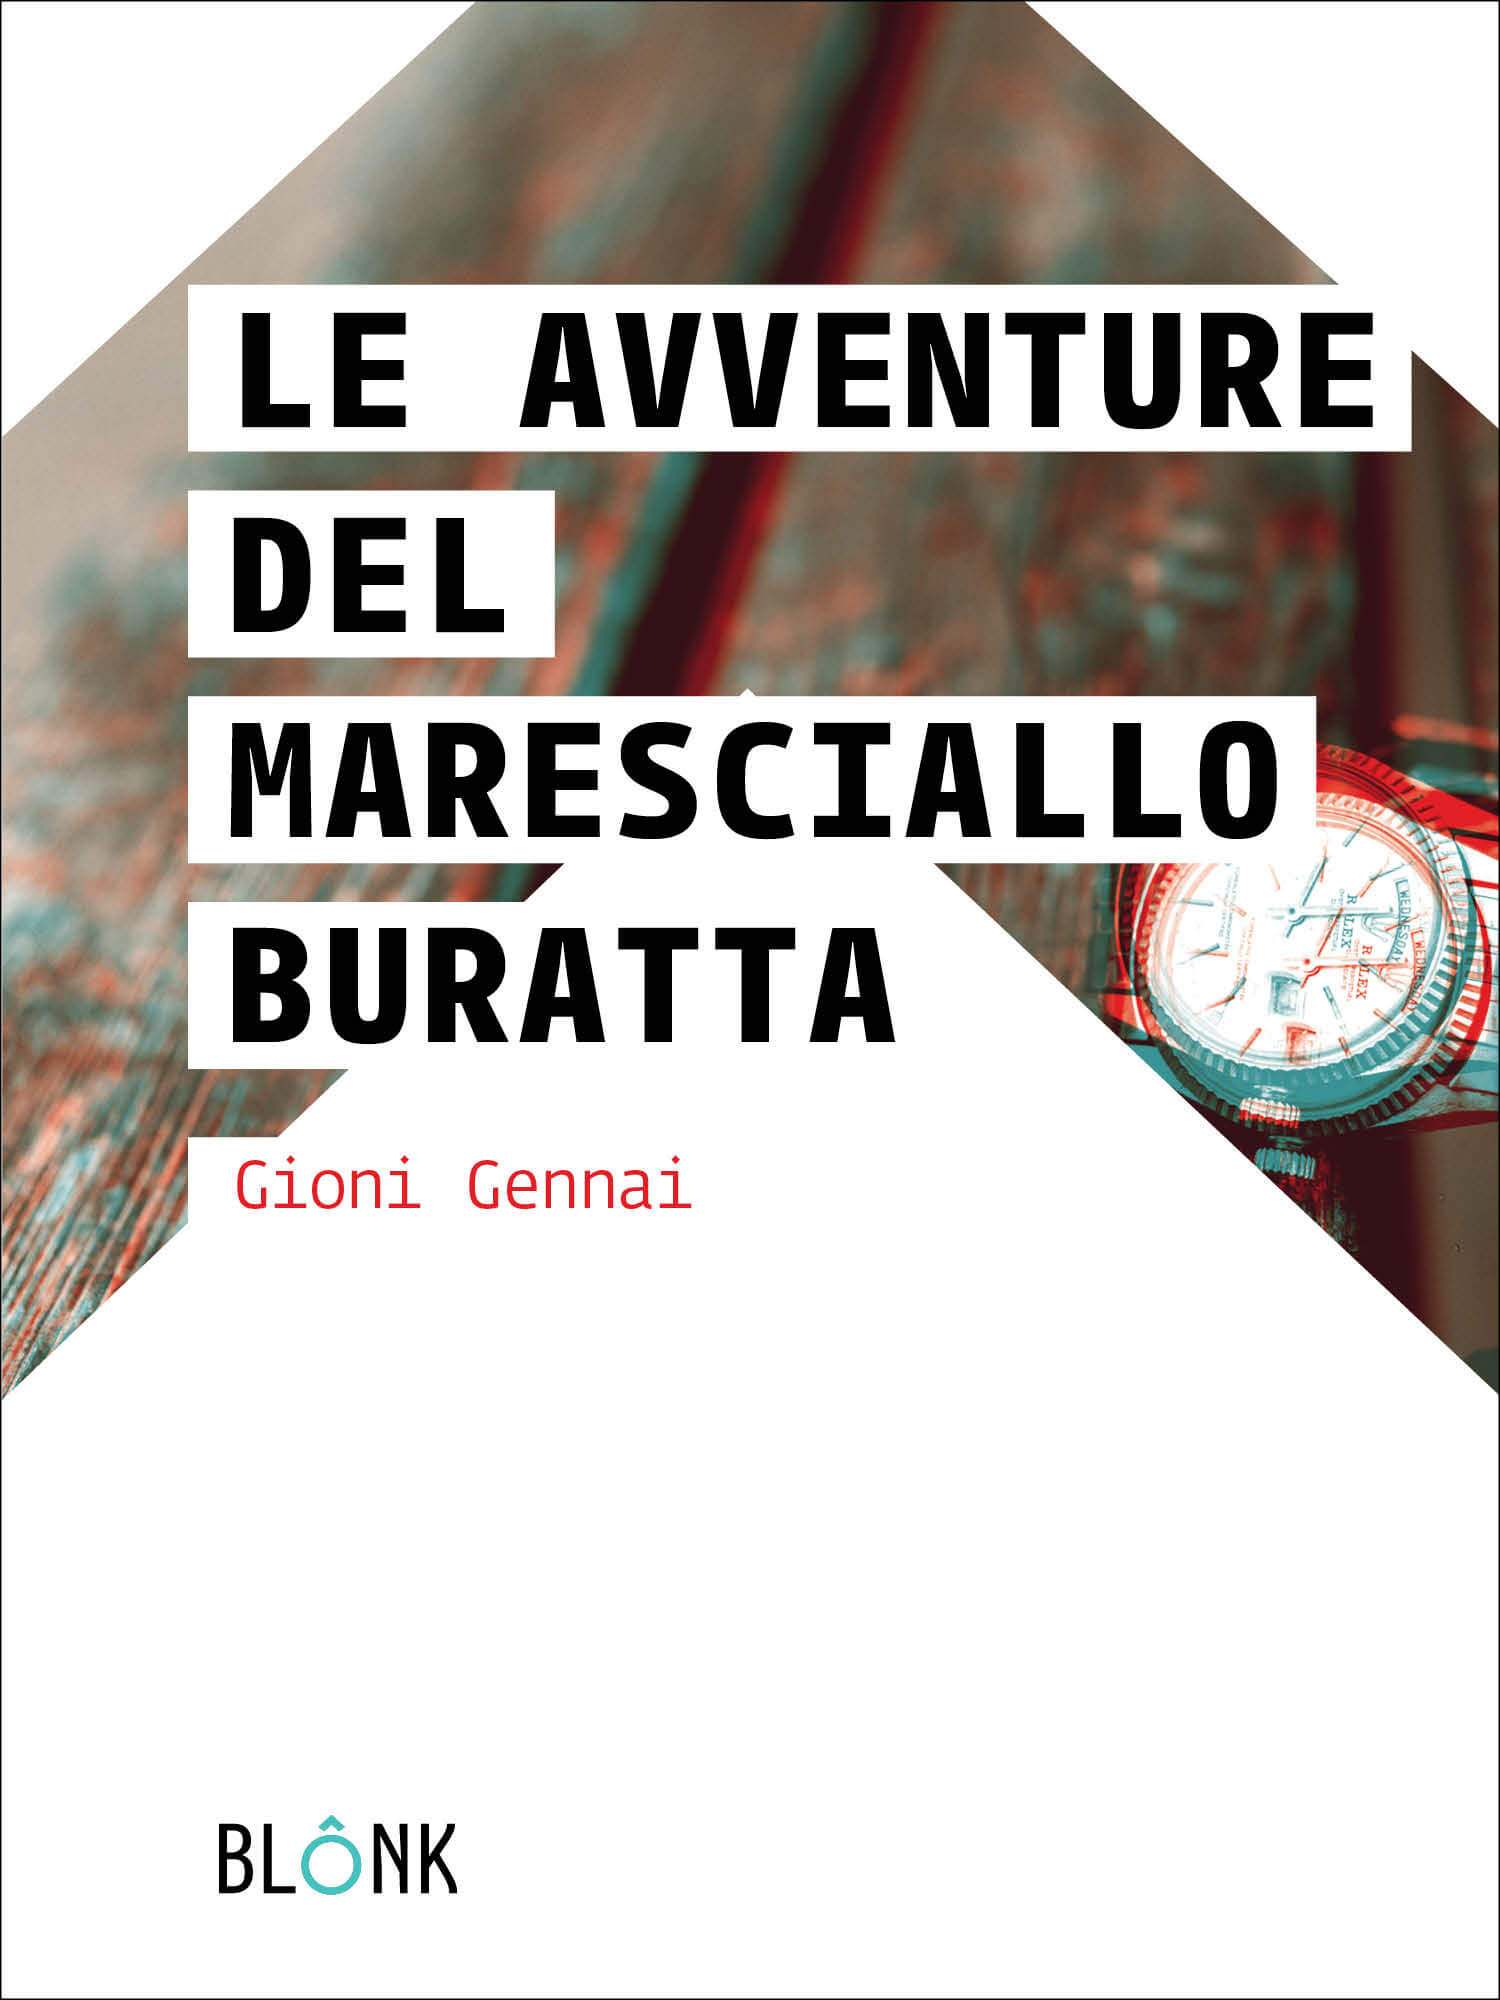 Libri Gioni Gennai - Le Avventure Del Maresciallo Buratta NUOVO SIGILLATO, EDIZIONE DEL 29/11/2016 SUBITO DISPONIBILE